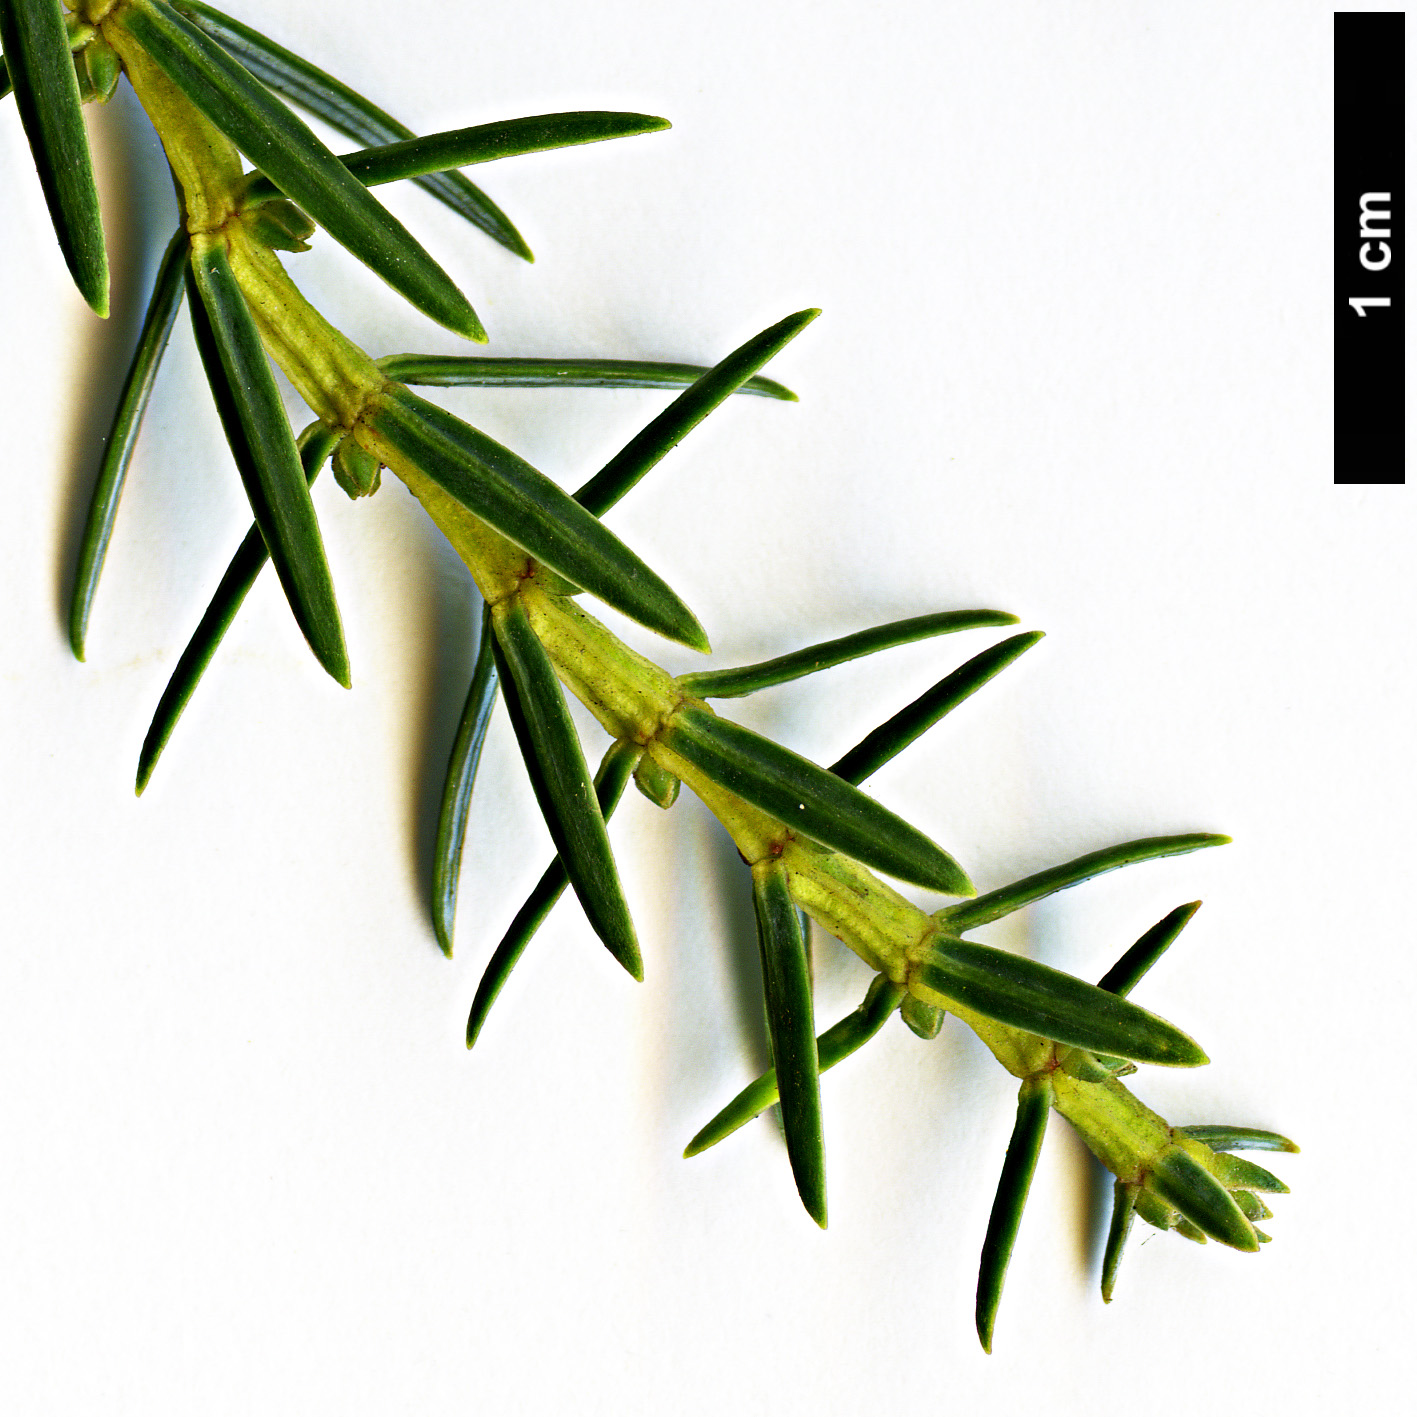 High resolution image: Family: Cupressaceae - Genus: Juniperus - Taxon: cedrus